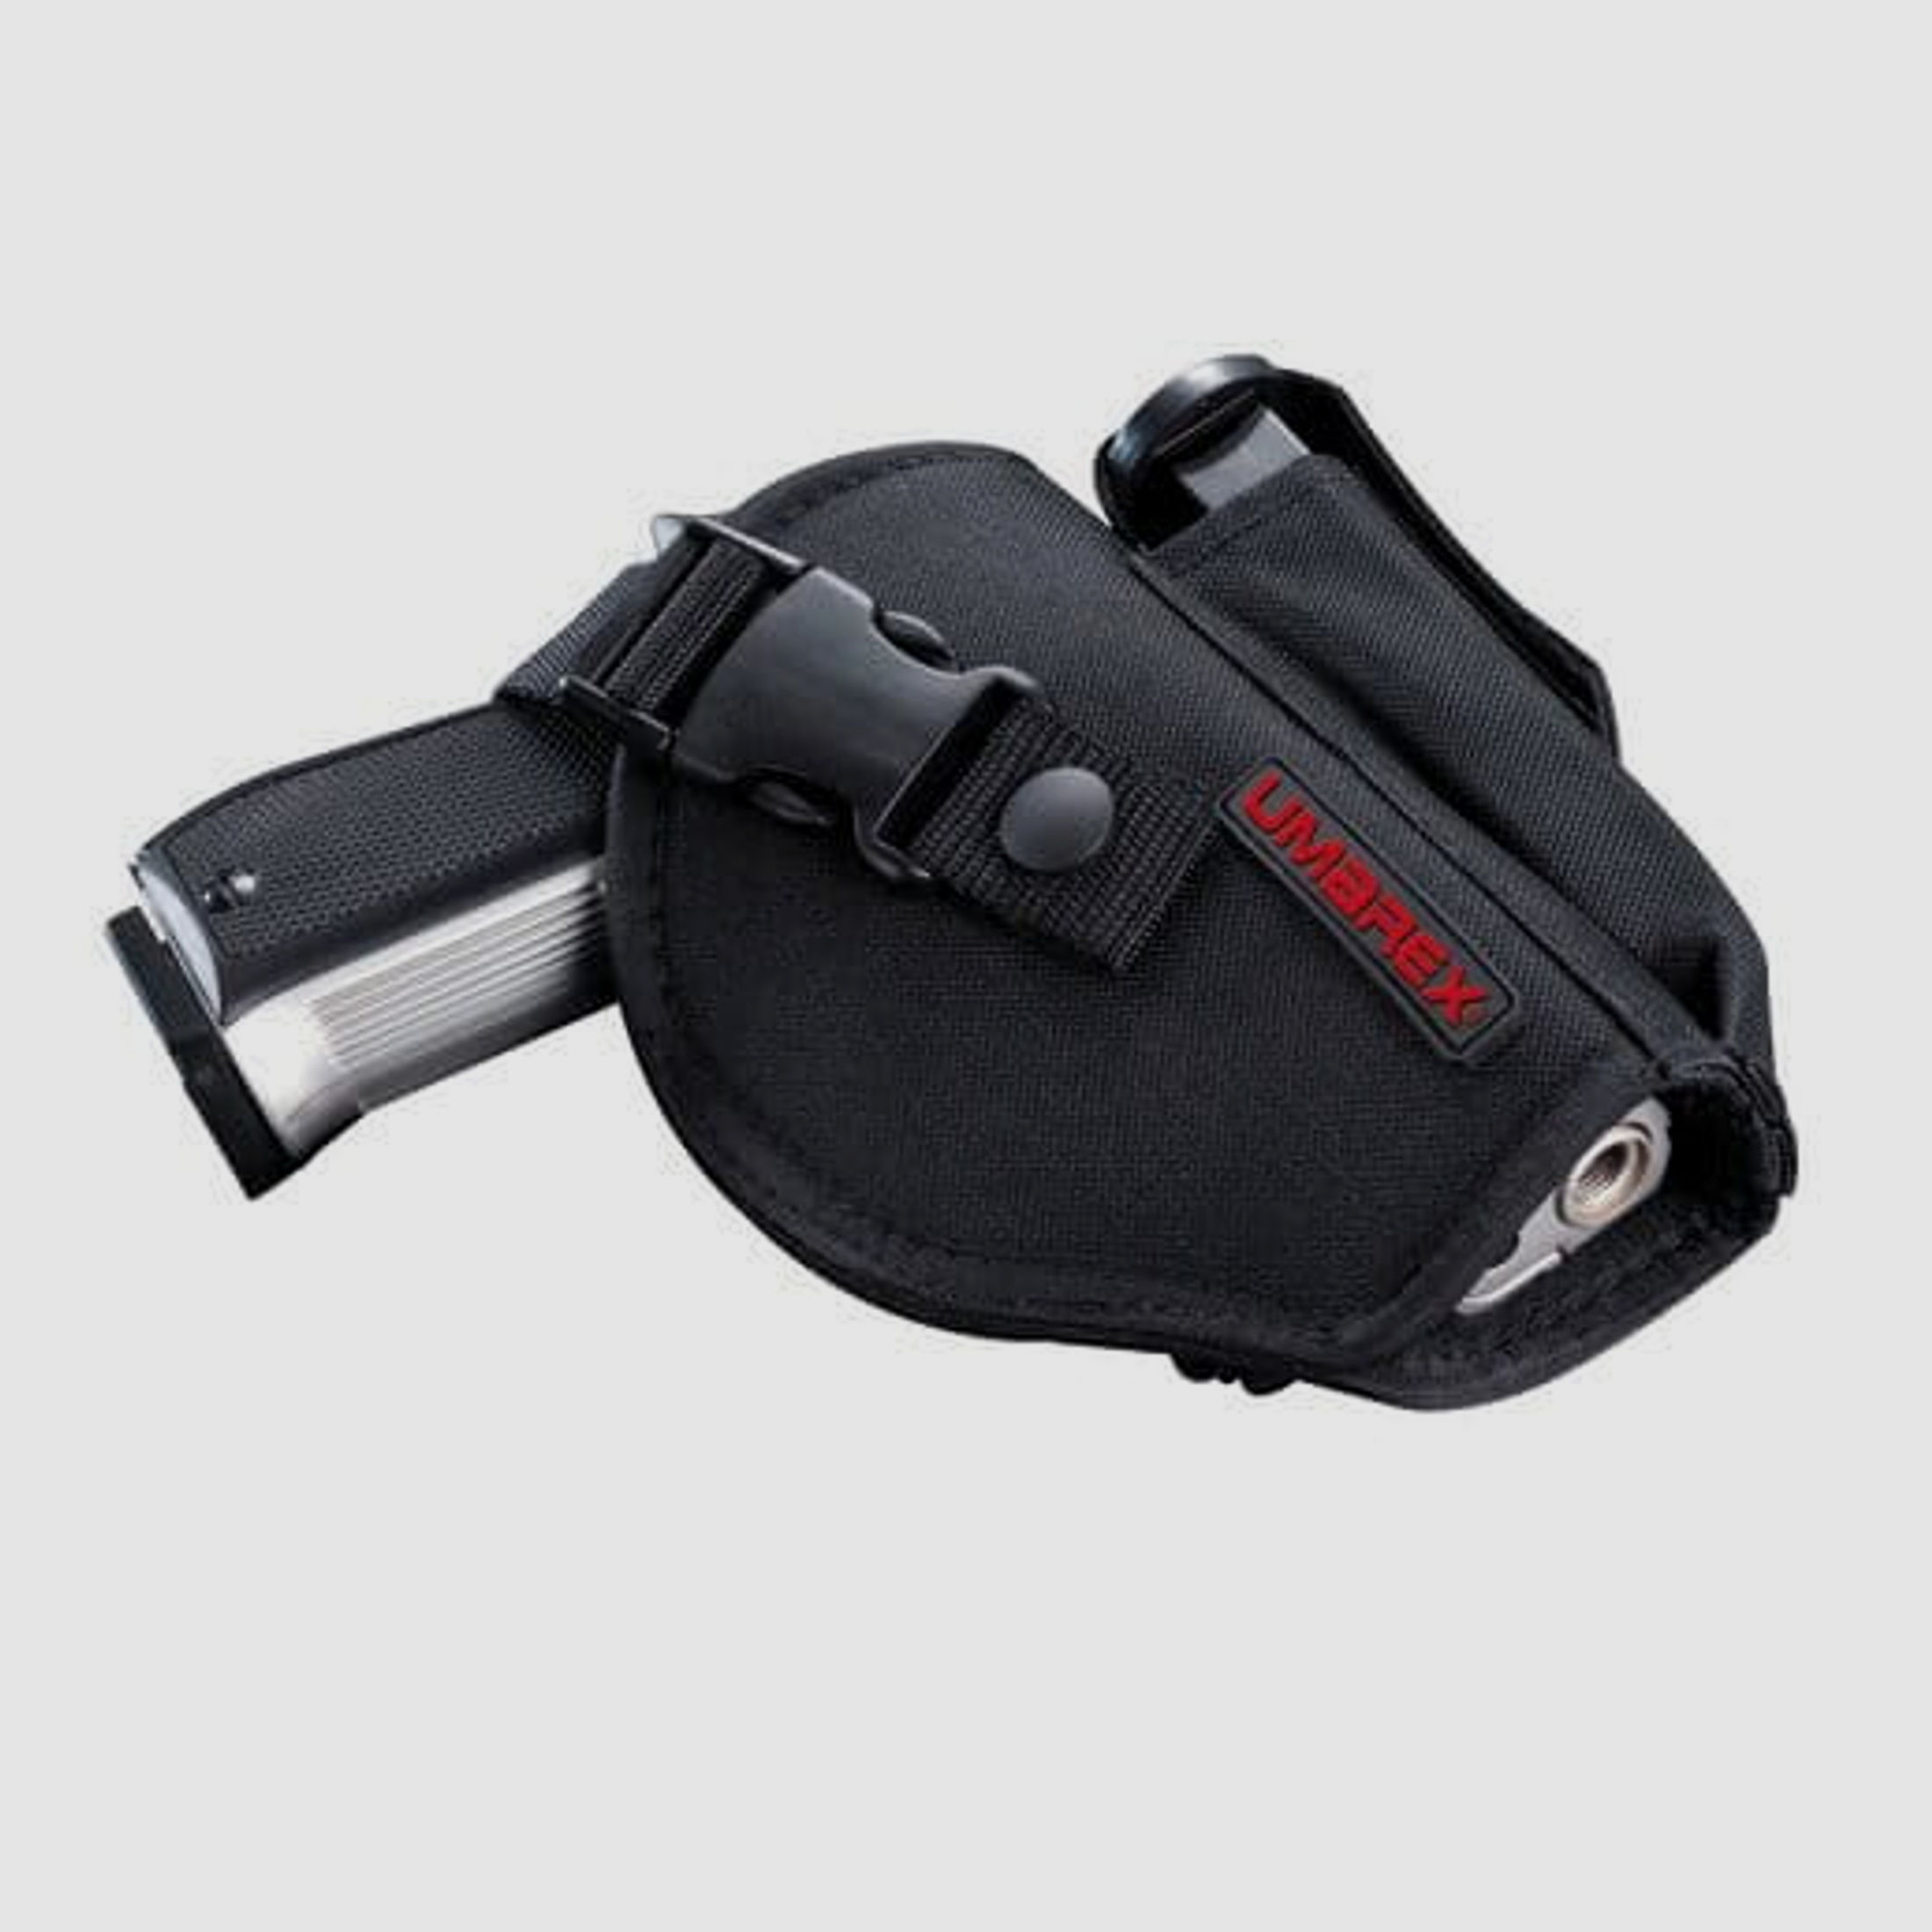 Umarex Gürtelholster mit Magazintasche für mittelgroße Pistolen